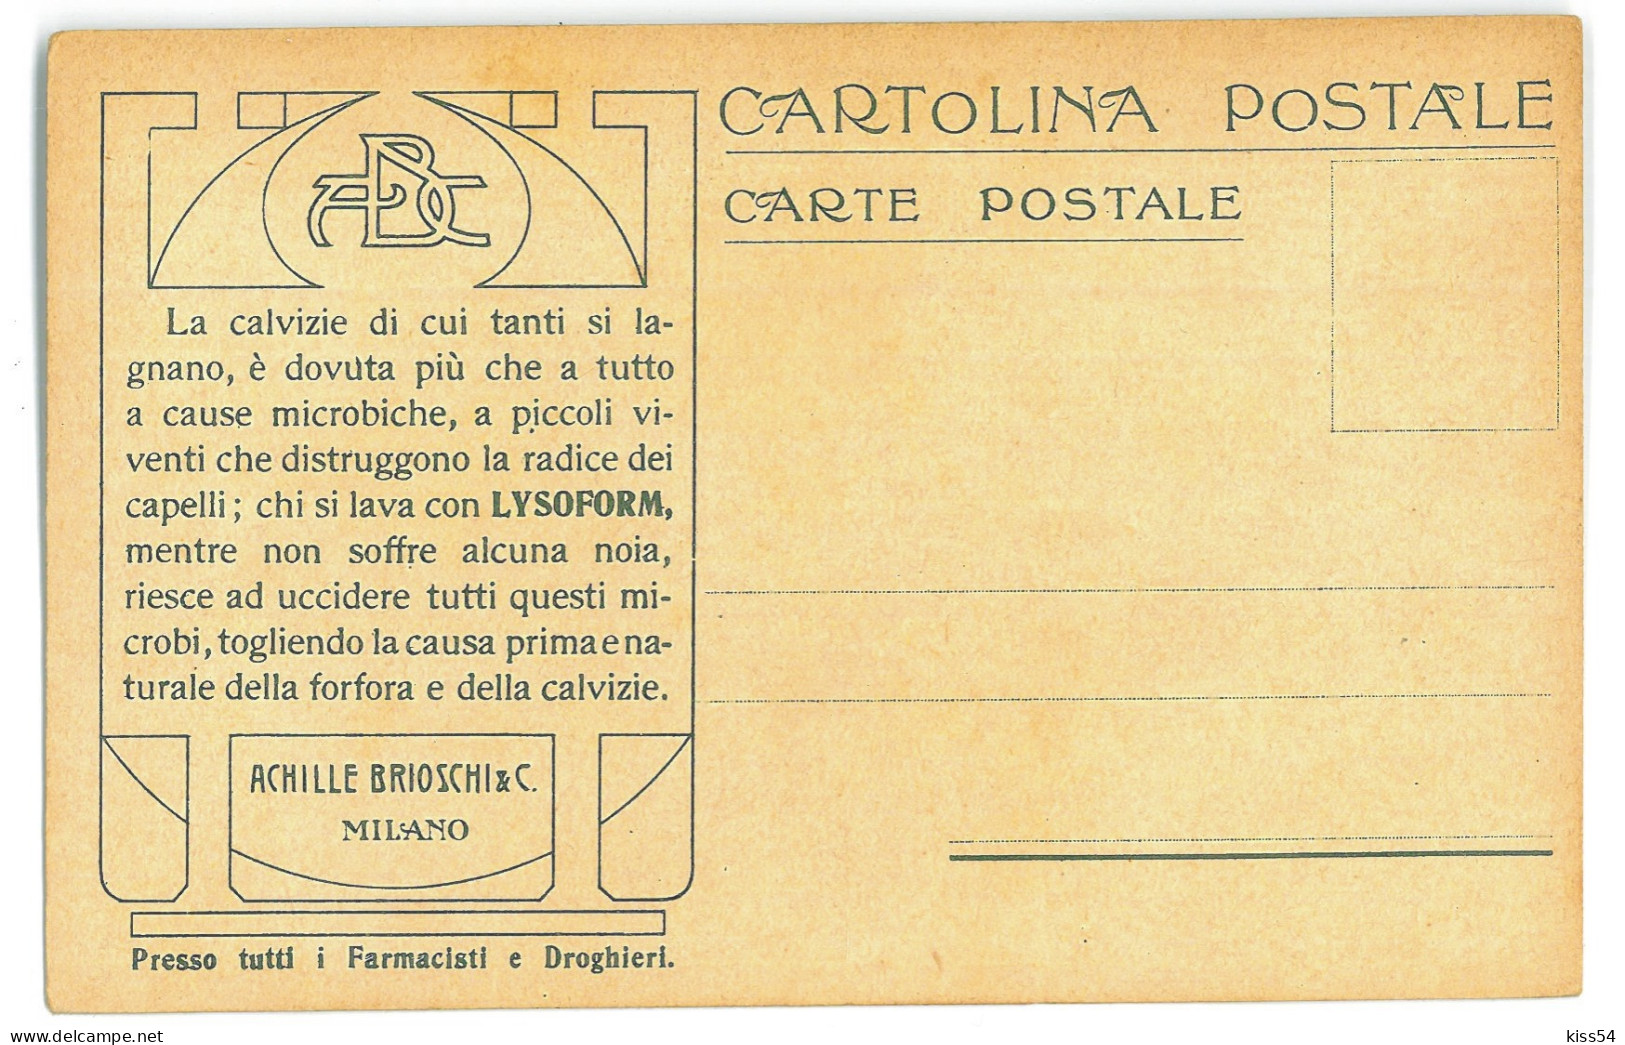 RO 52 - 21376 Flag, Carol I Stamp, POSTMAN, BIKE, Ethnic Woman, Litho, Romania - Old Postcard - Unused - Rumänien